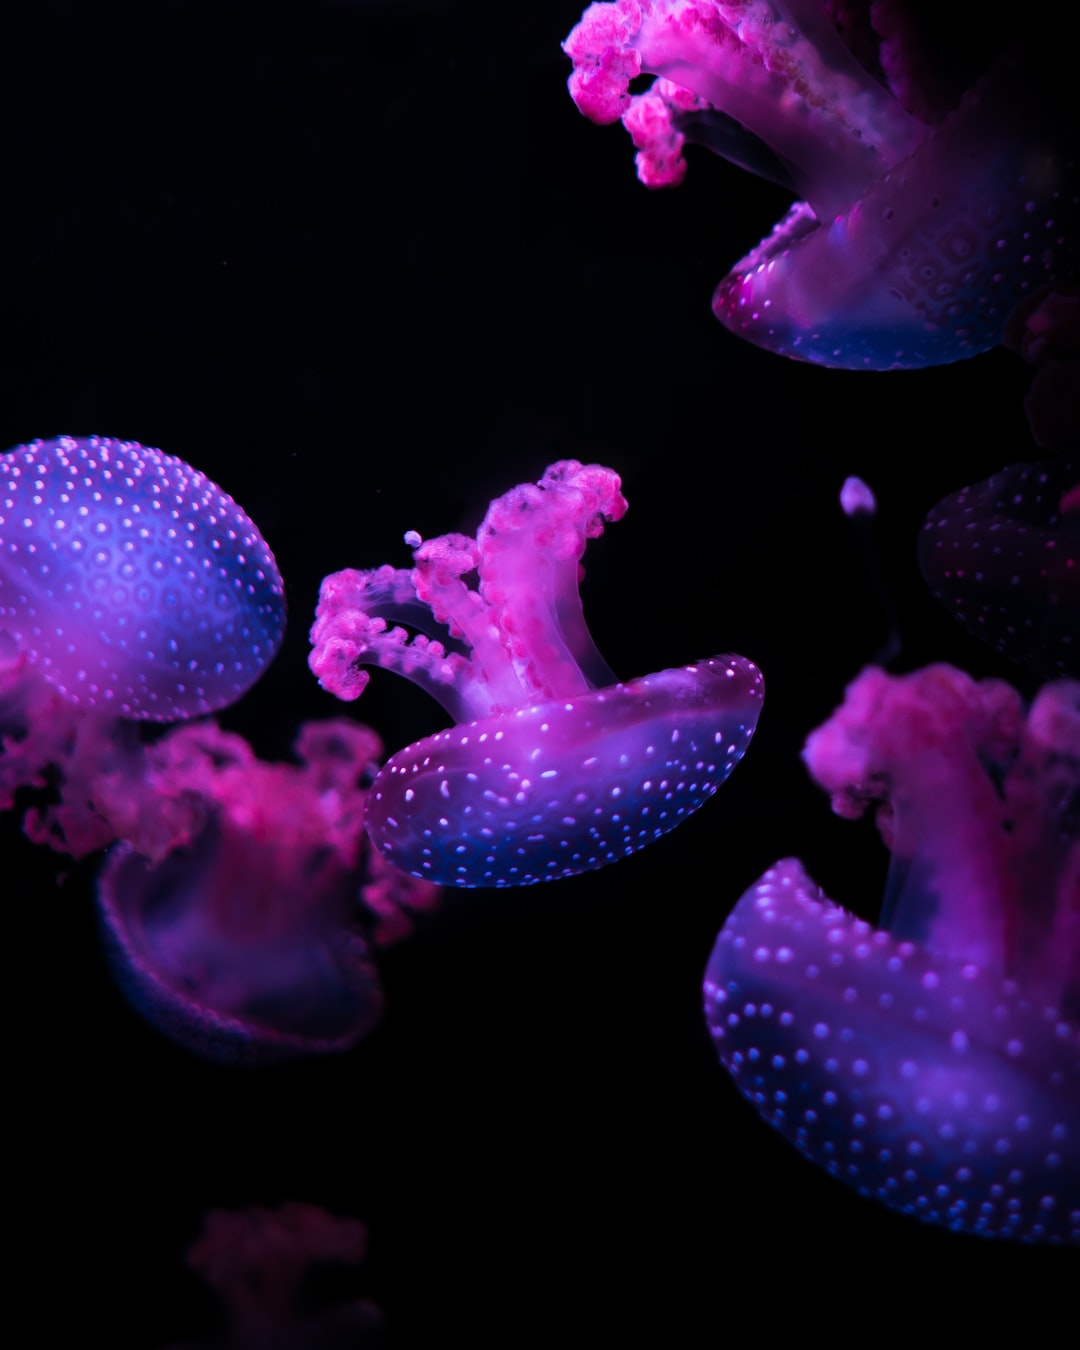 25 wichtige Fragen zu Wie Schnell Vermehren Sich Schnecken Im Aquarium?